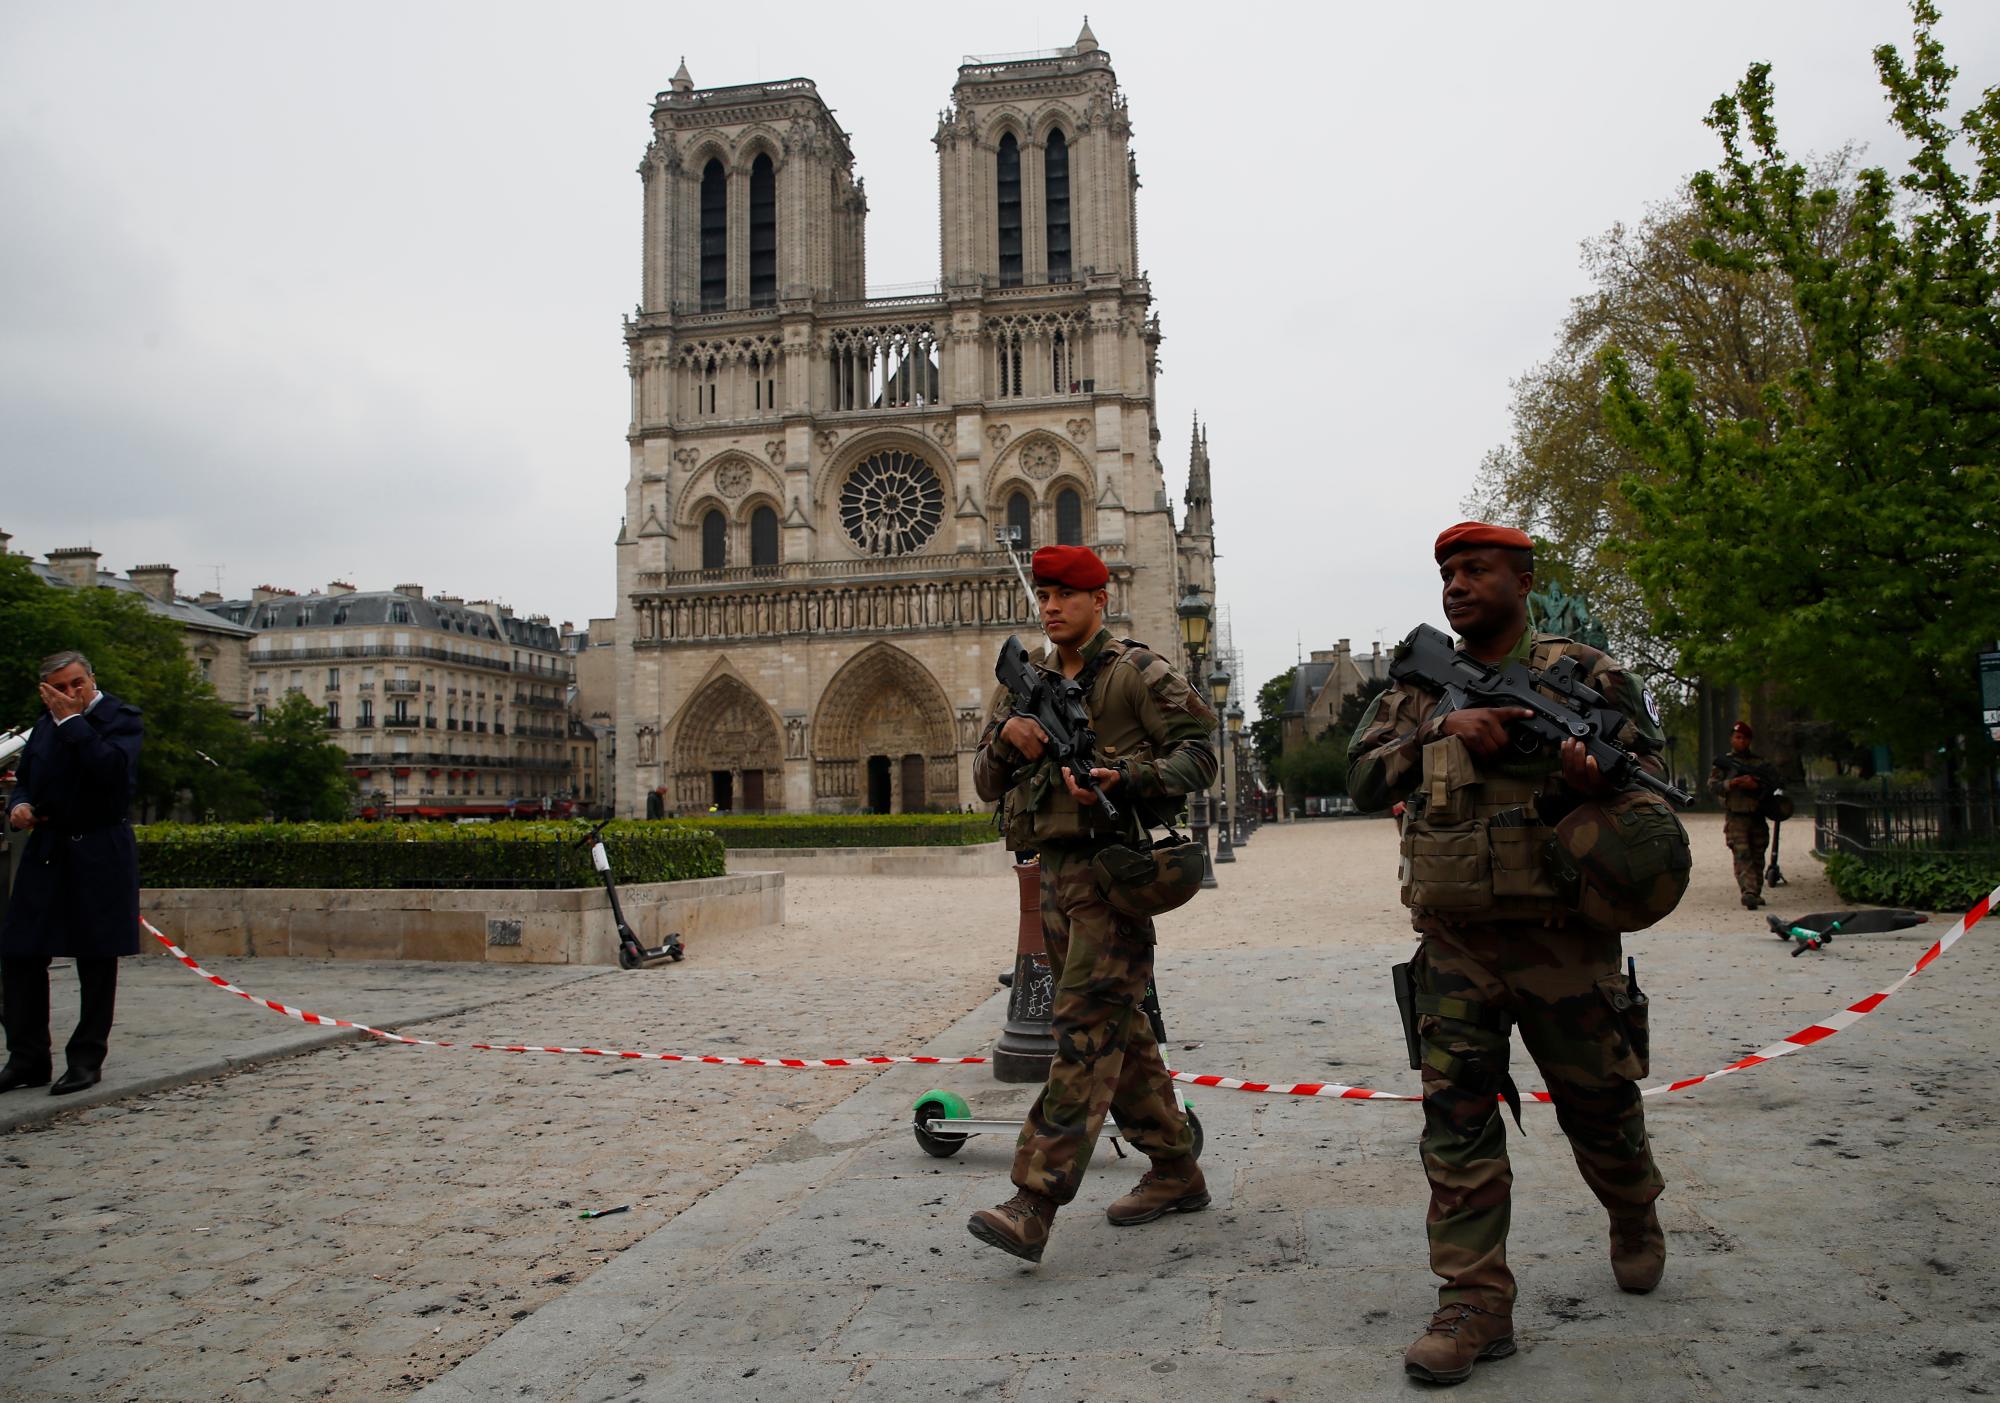 Los soldados patrullan frente a la Catedral de Notre Dame el martes 16 de abril, 2019 en París.